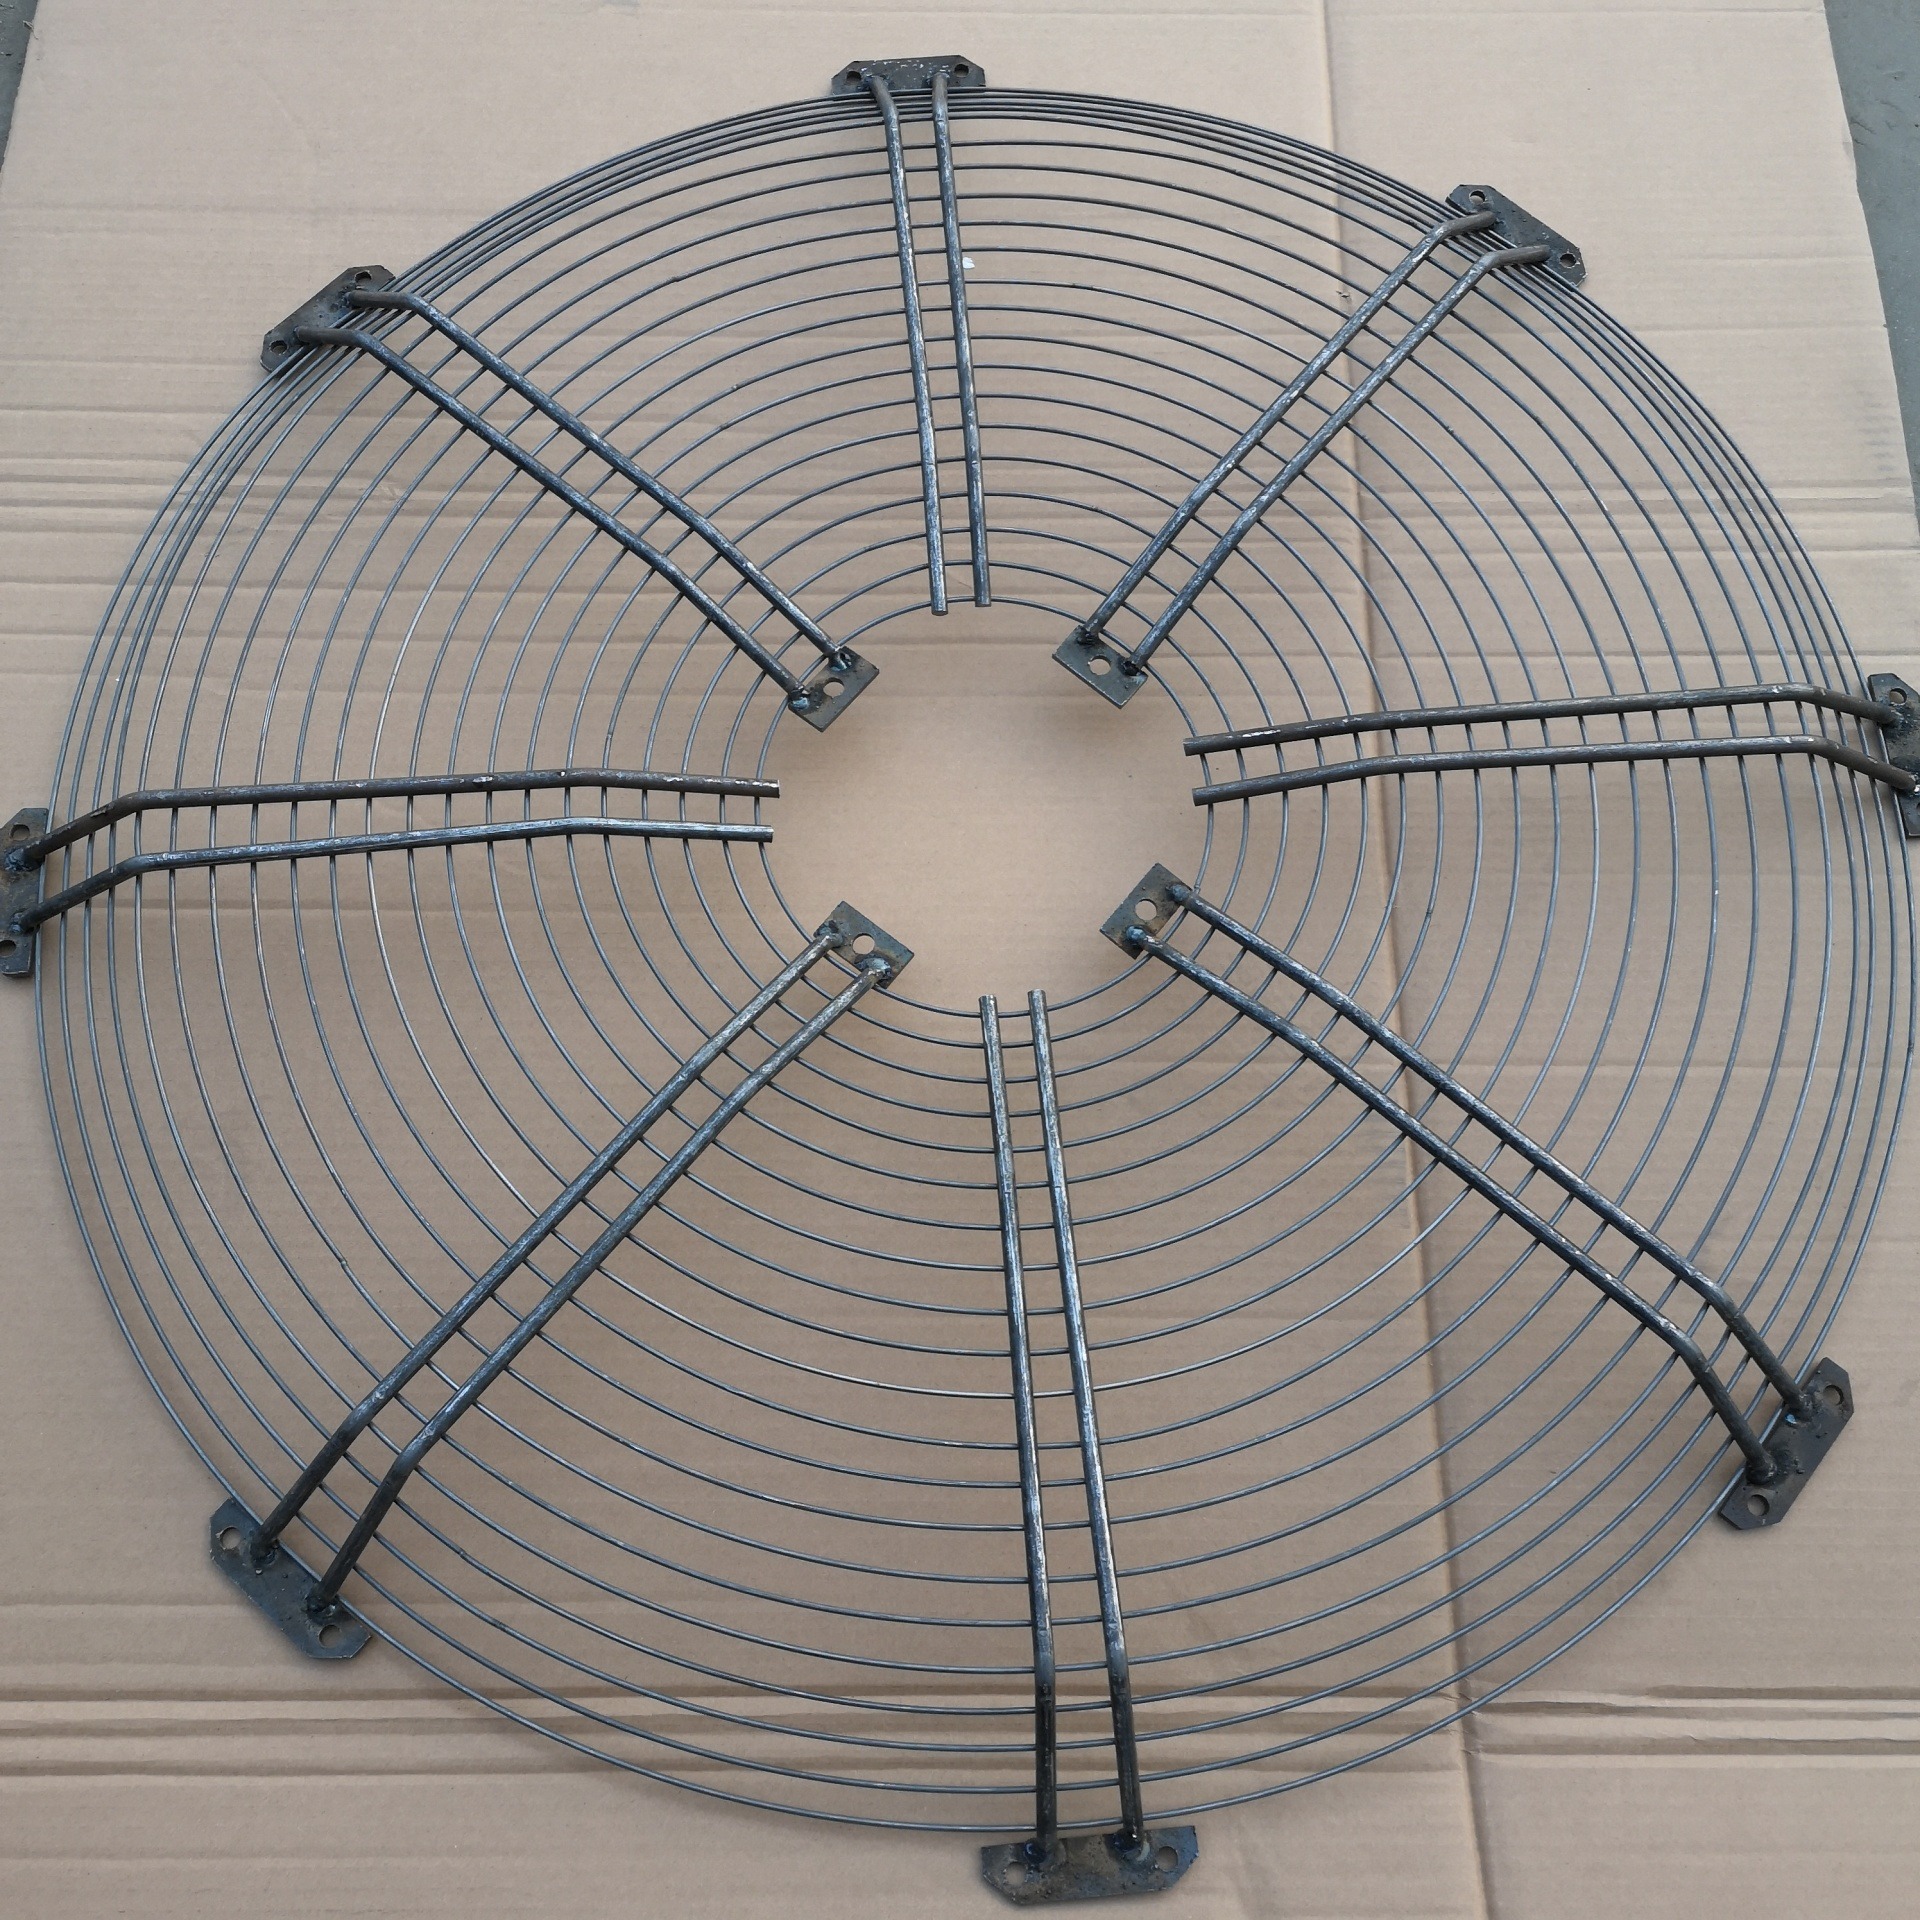 风机网罩厂家 异型风机防护网加工定制 金属散热网罩  兴博风机网罩